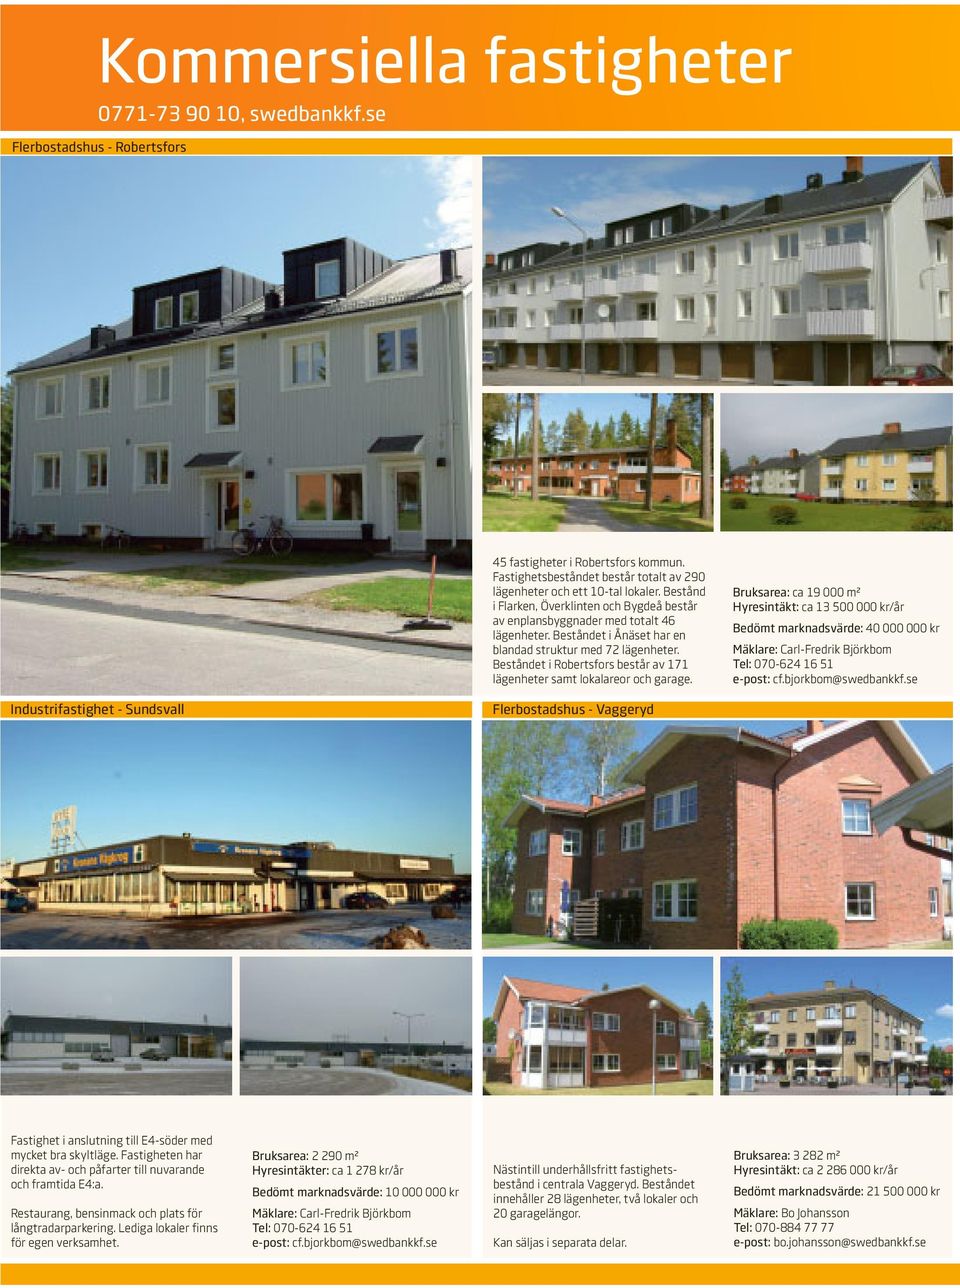 Beståndet i Robertsfors består av 171 lägenheter samt lokalareor och garage.